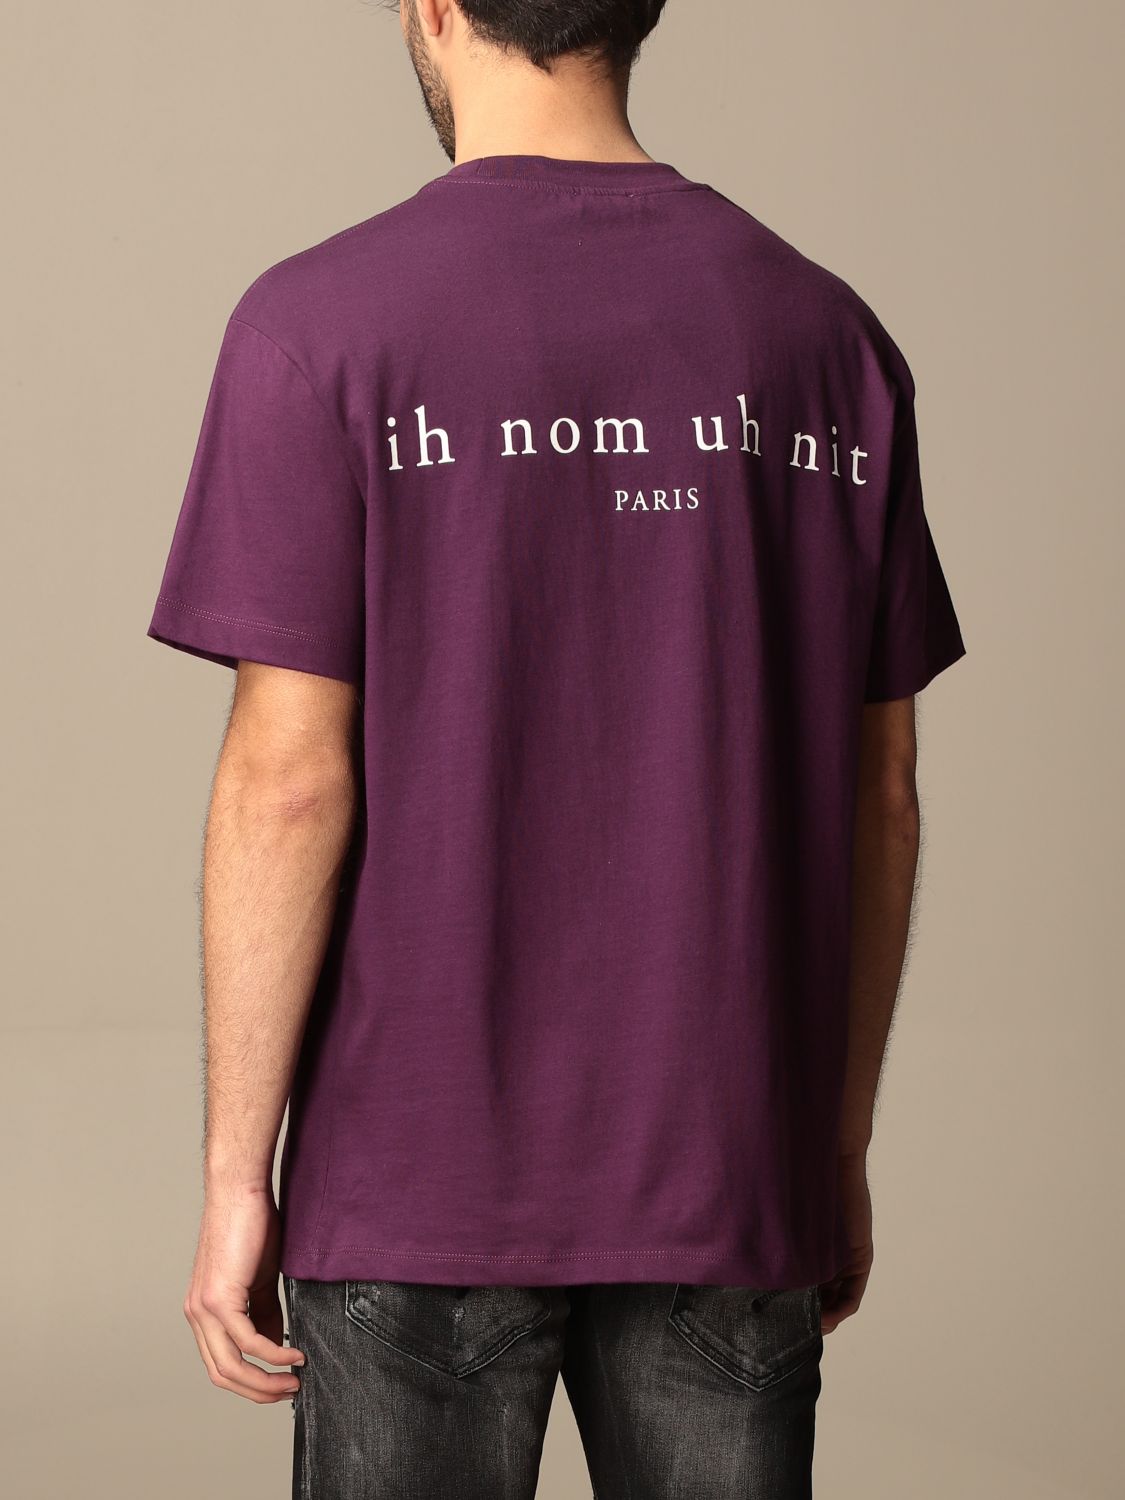 T-shirt Ih Nom Uh Nit: Ih Nom Uh Nit cotton t-shirt with logo violet 2